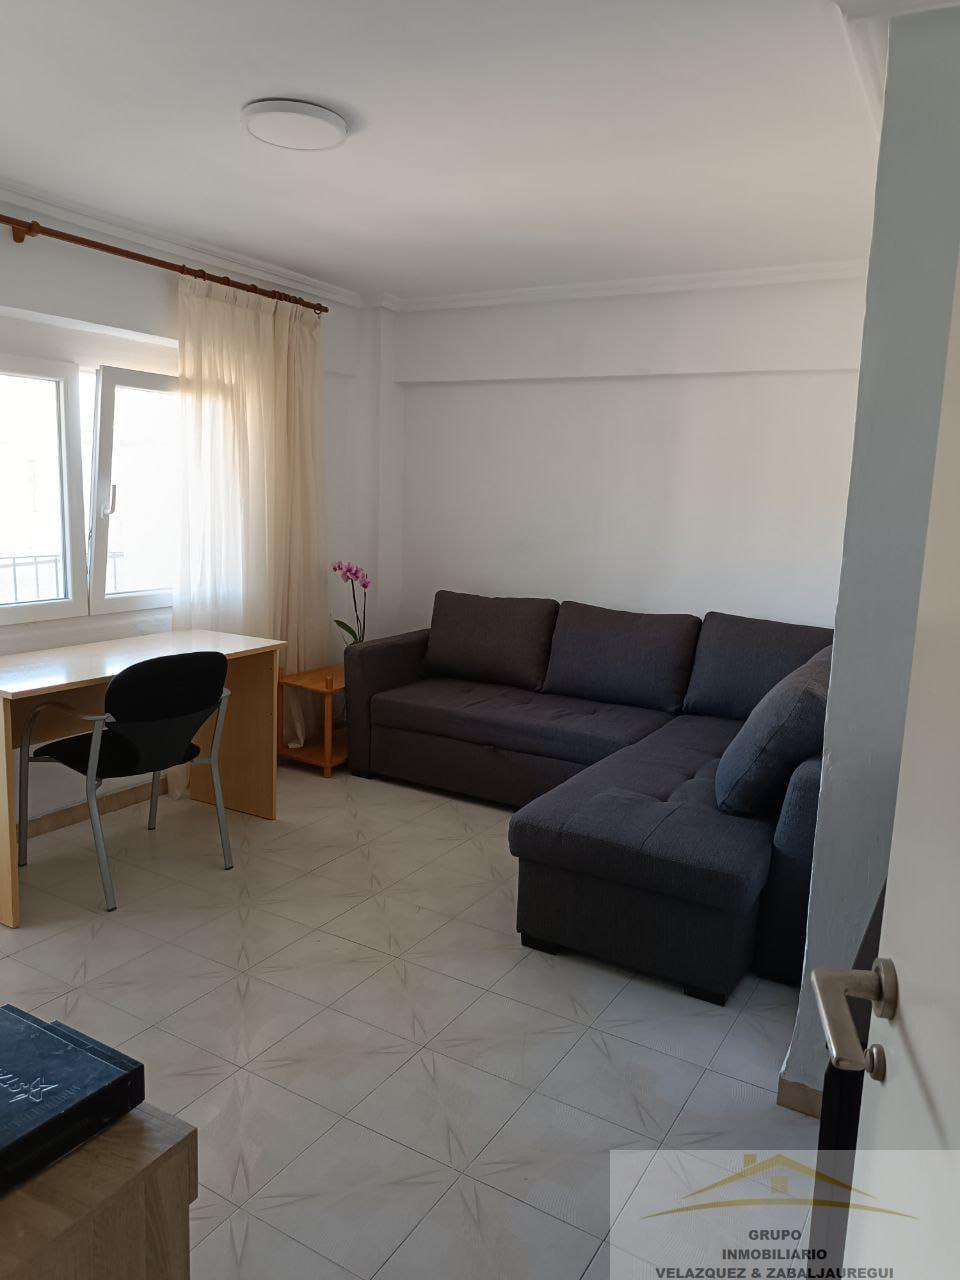 Apartamento en venta en Requena, Alicante